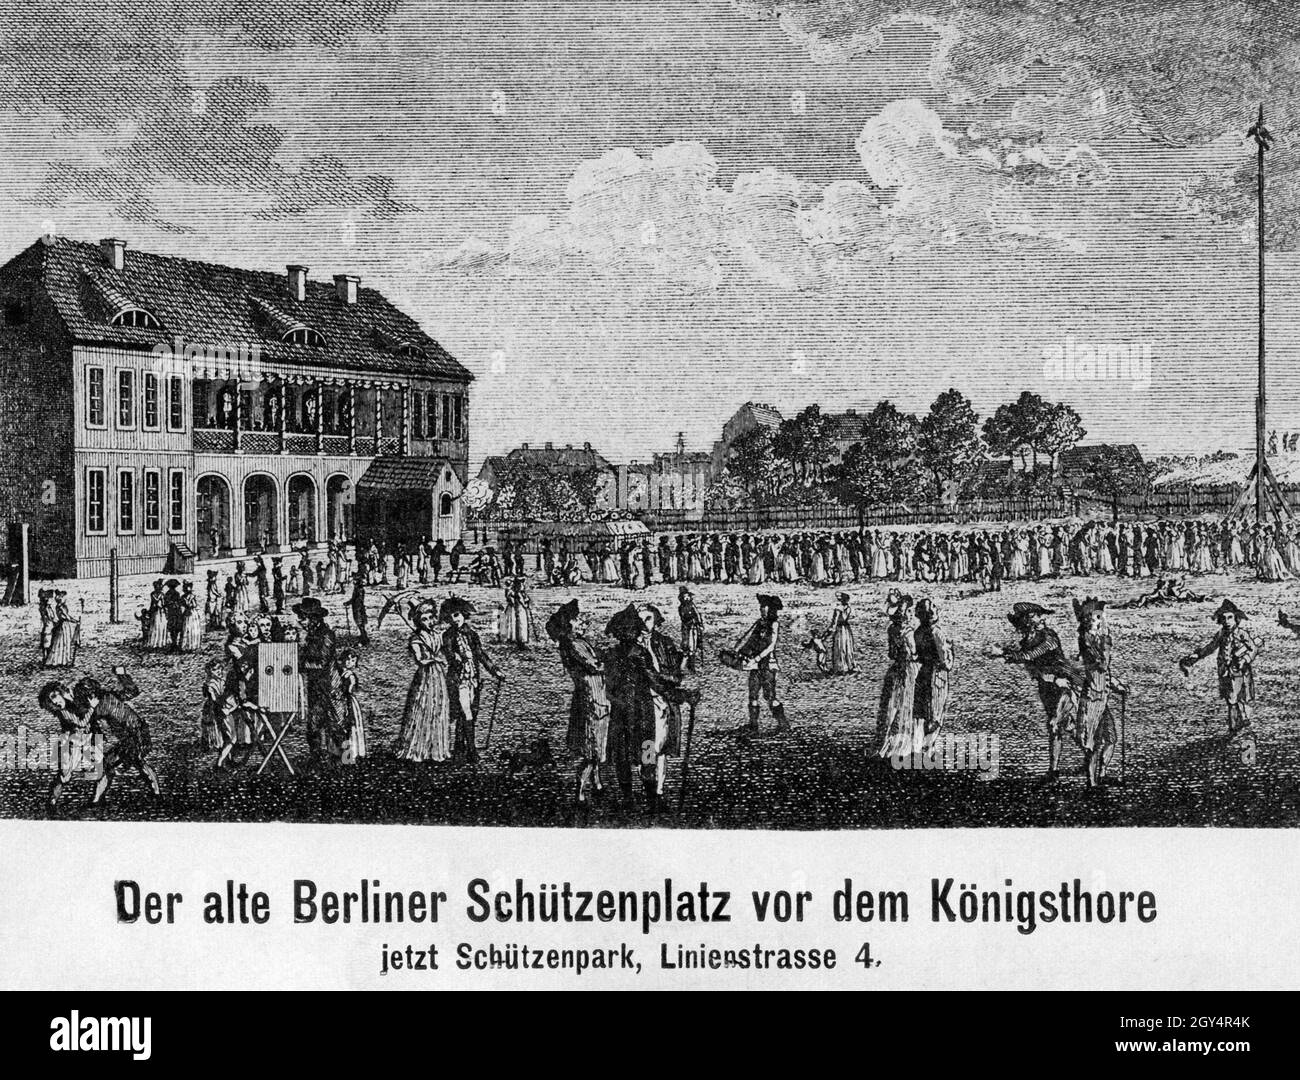 Cette gravure montre un festival sur l'ancienne Schützenplatz à Berlin-Mitte, plus tard Schützenpark à Linienstraße 4.Il était situé en face de la Königsthor au nord-est de la vieille ville.Gravure non datée, probablement faite autour de 1750.[traduction automatique] Banque D'Images